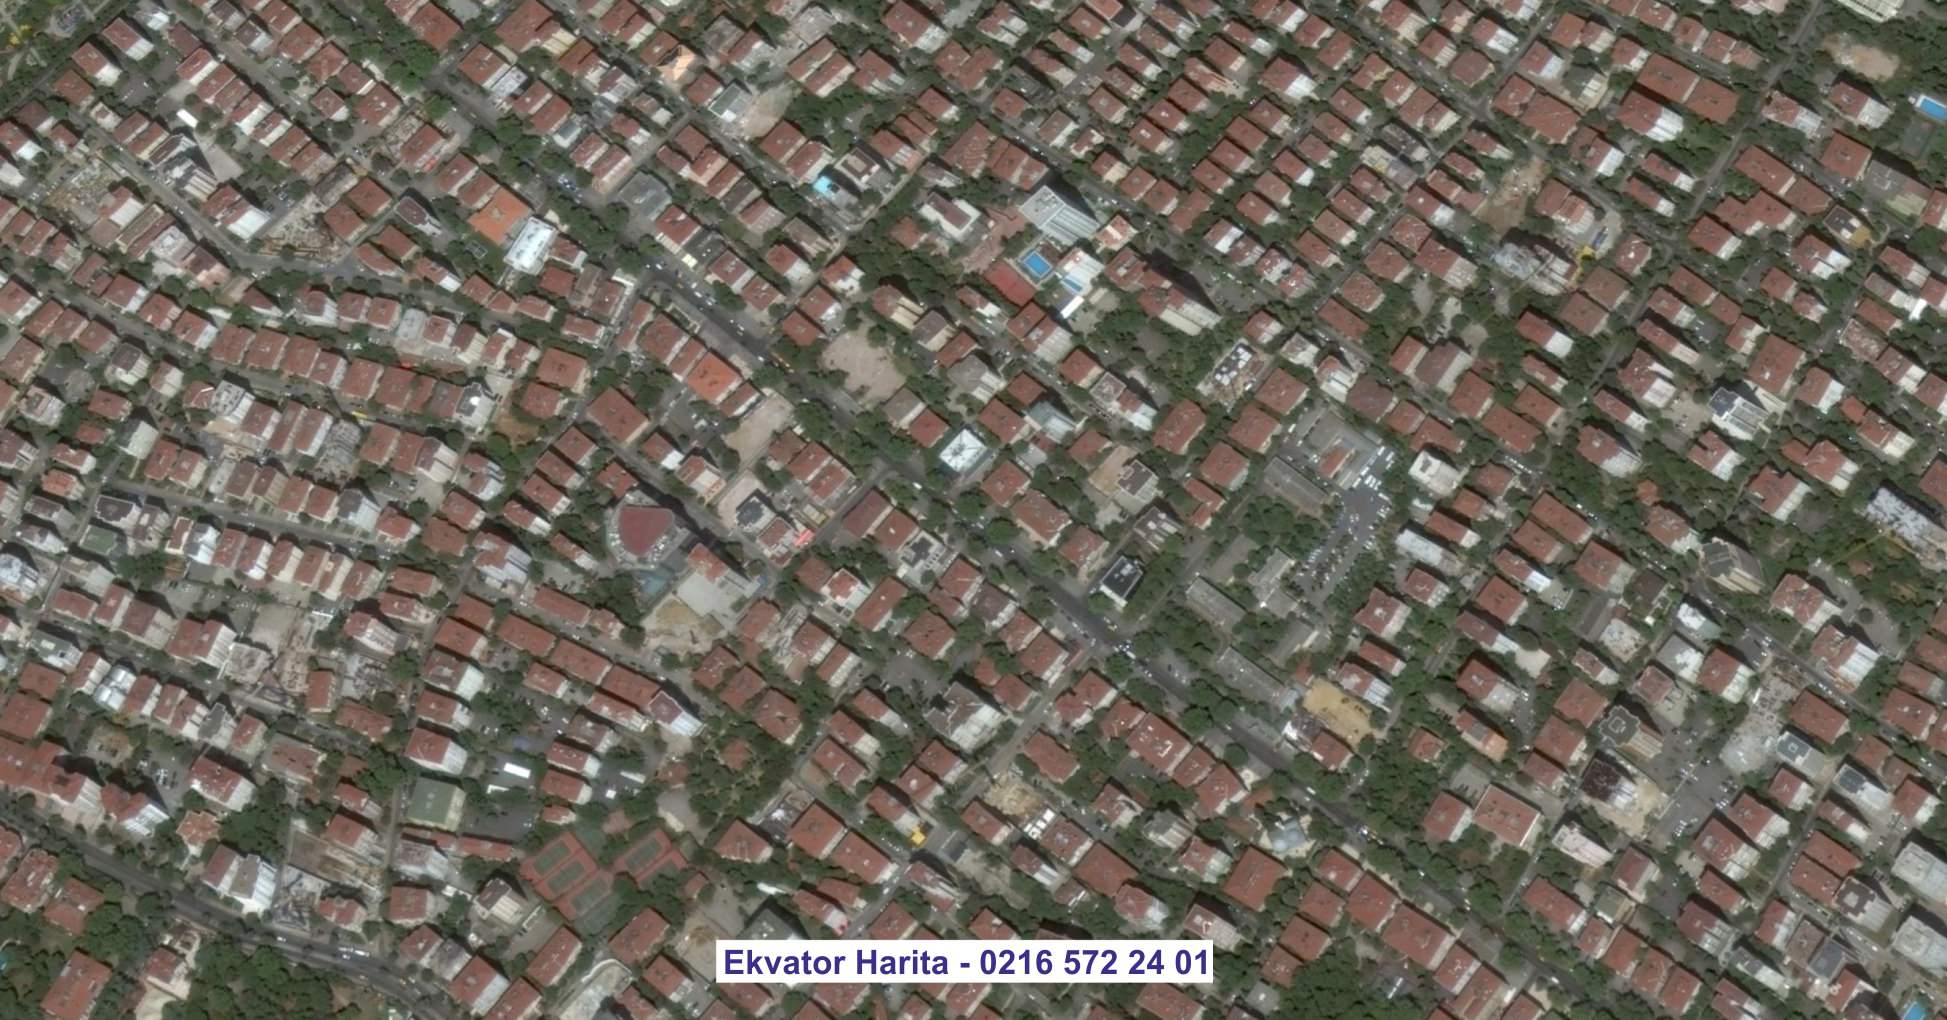 Edirne Uydu Görüntüsü Örnek Fotoğrafı